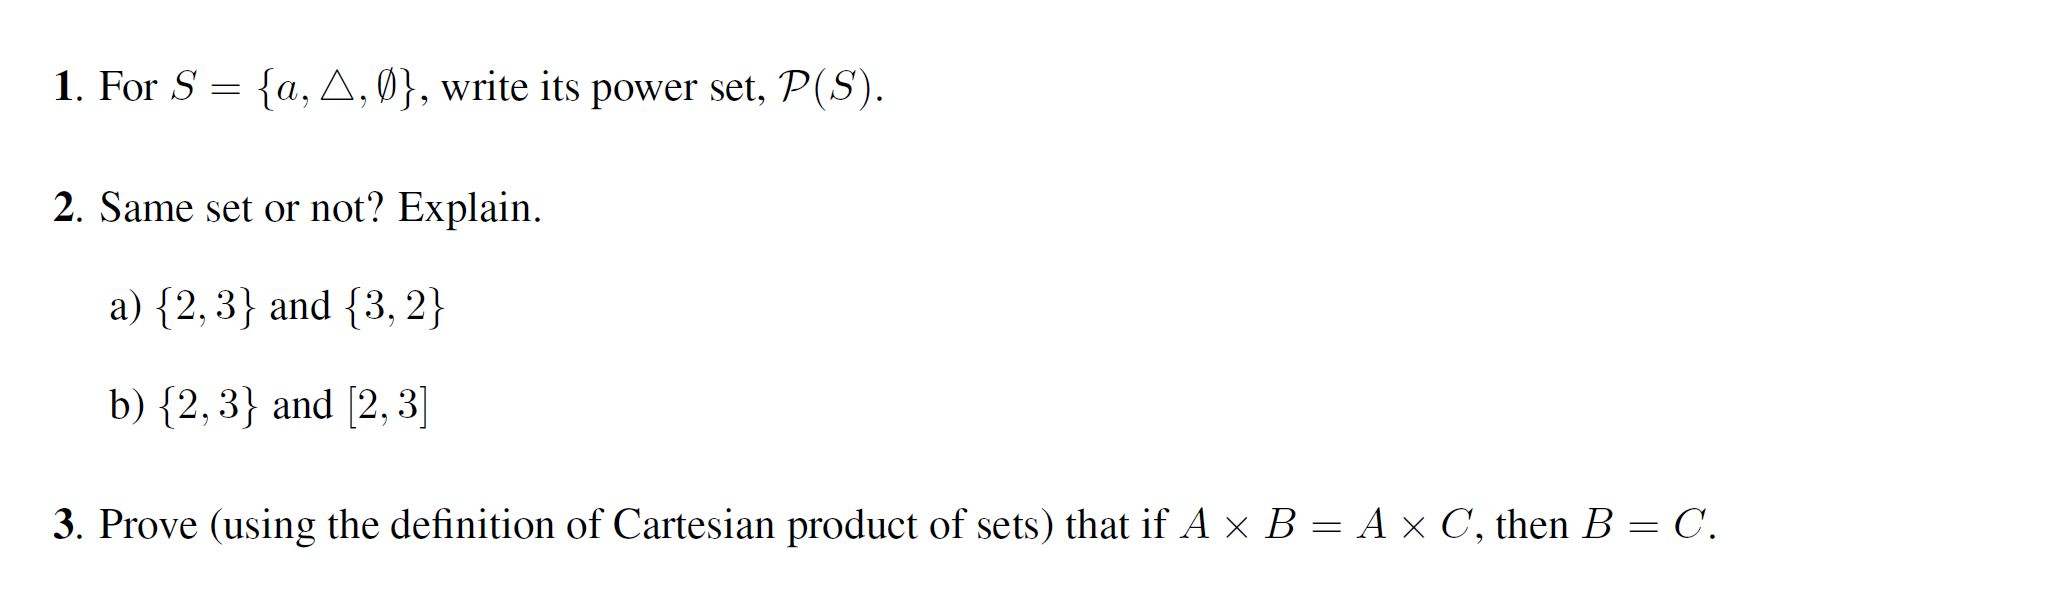 15. For S = a, A,Ø, write its power set, P(S). 15.  Chegg.com